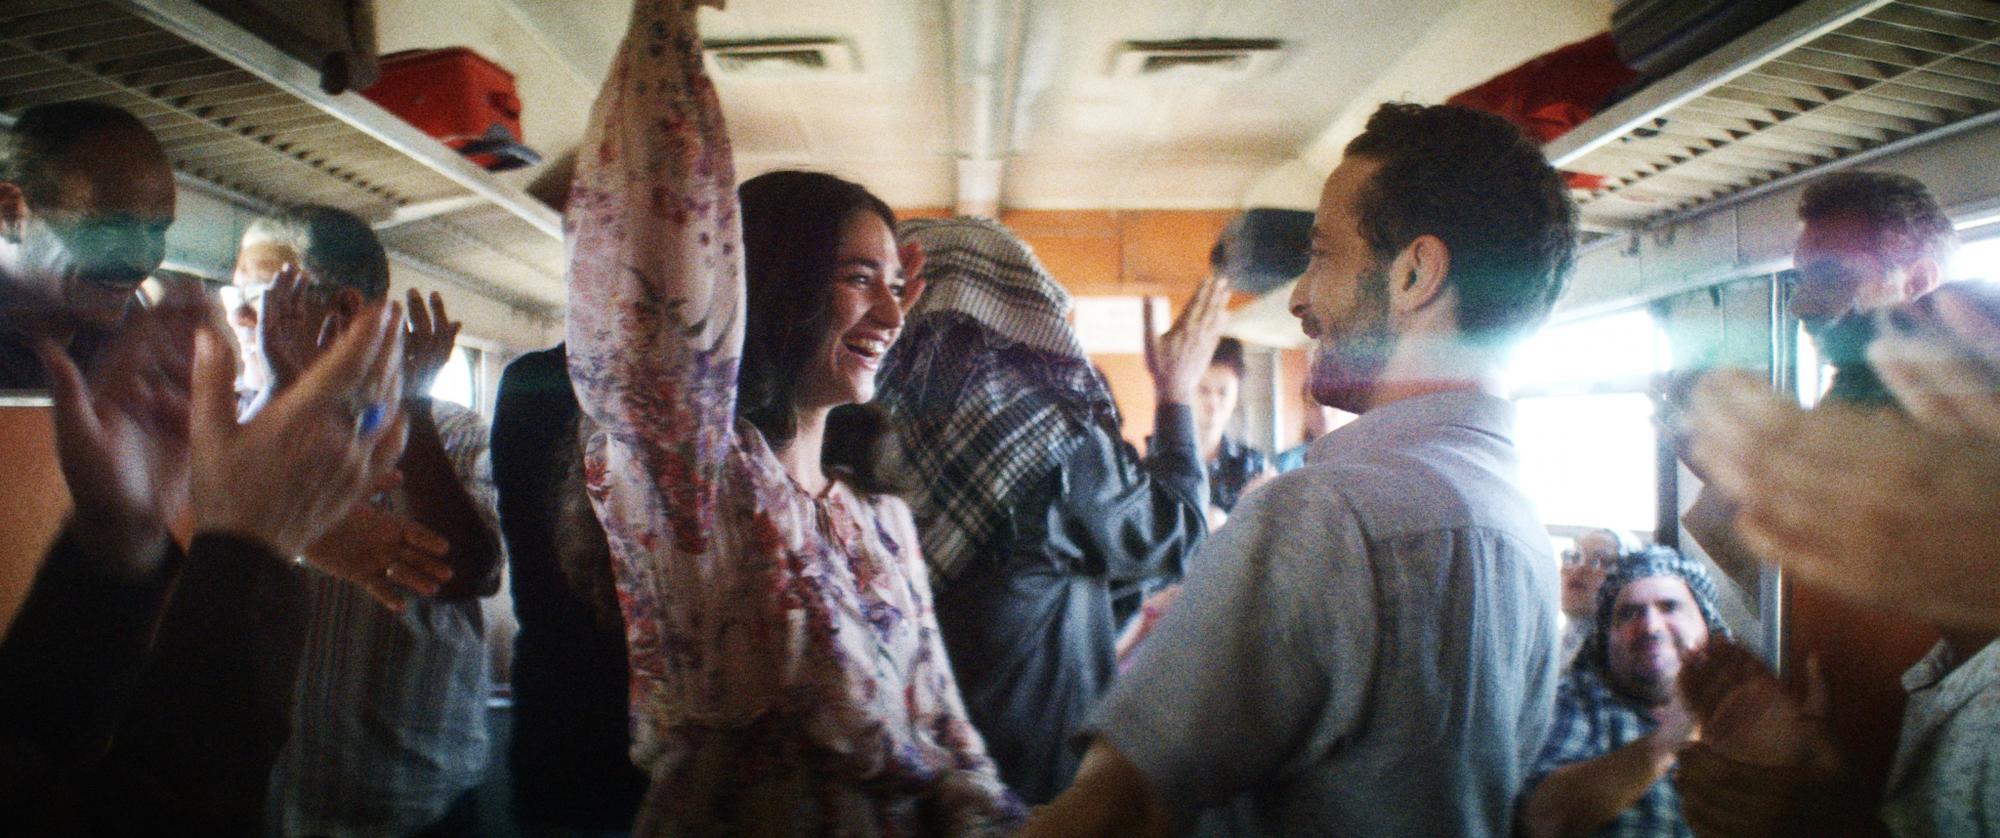 Sam Ali und Abeer feiern ihre Liebe in einem syrischen Zugabteil. Copyright: eksystent Filmverleih.